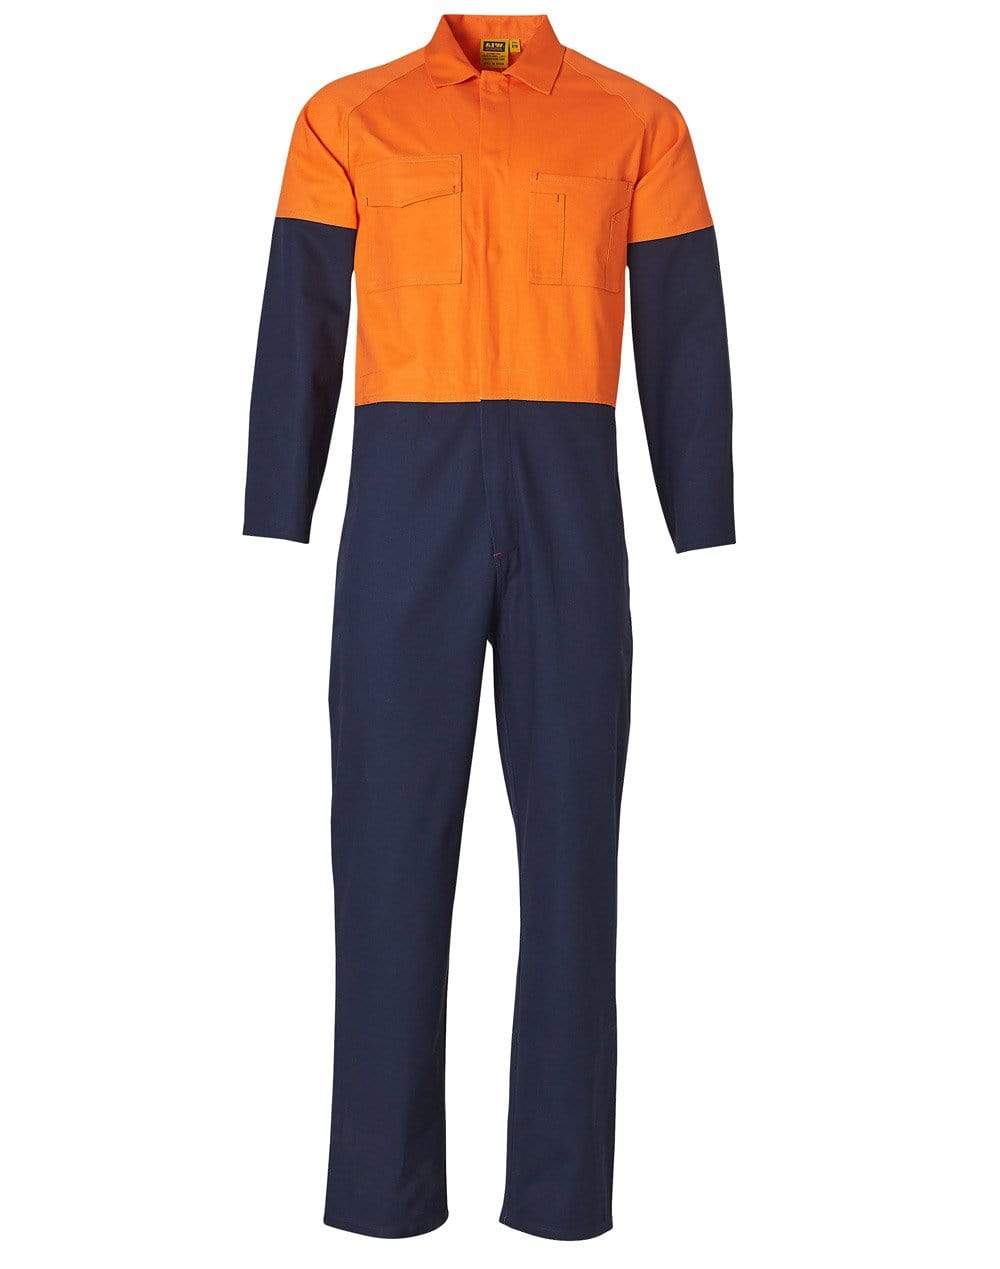 Men's Two Tone Coverall Regular Size SW204 Work Wear Australian Industrial Wear 77R Orange/Navy 